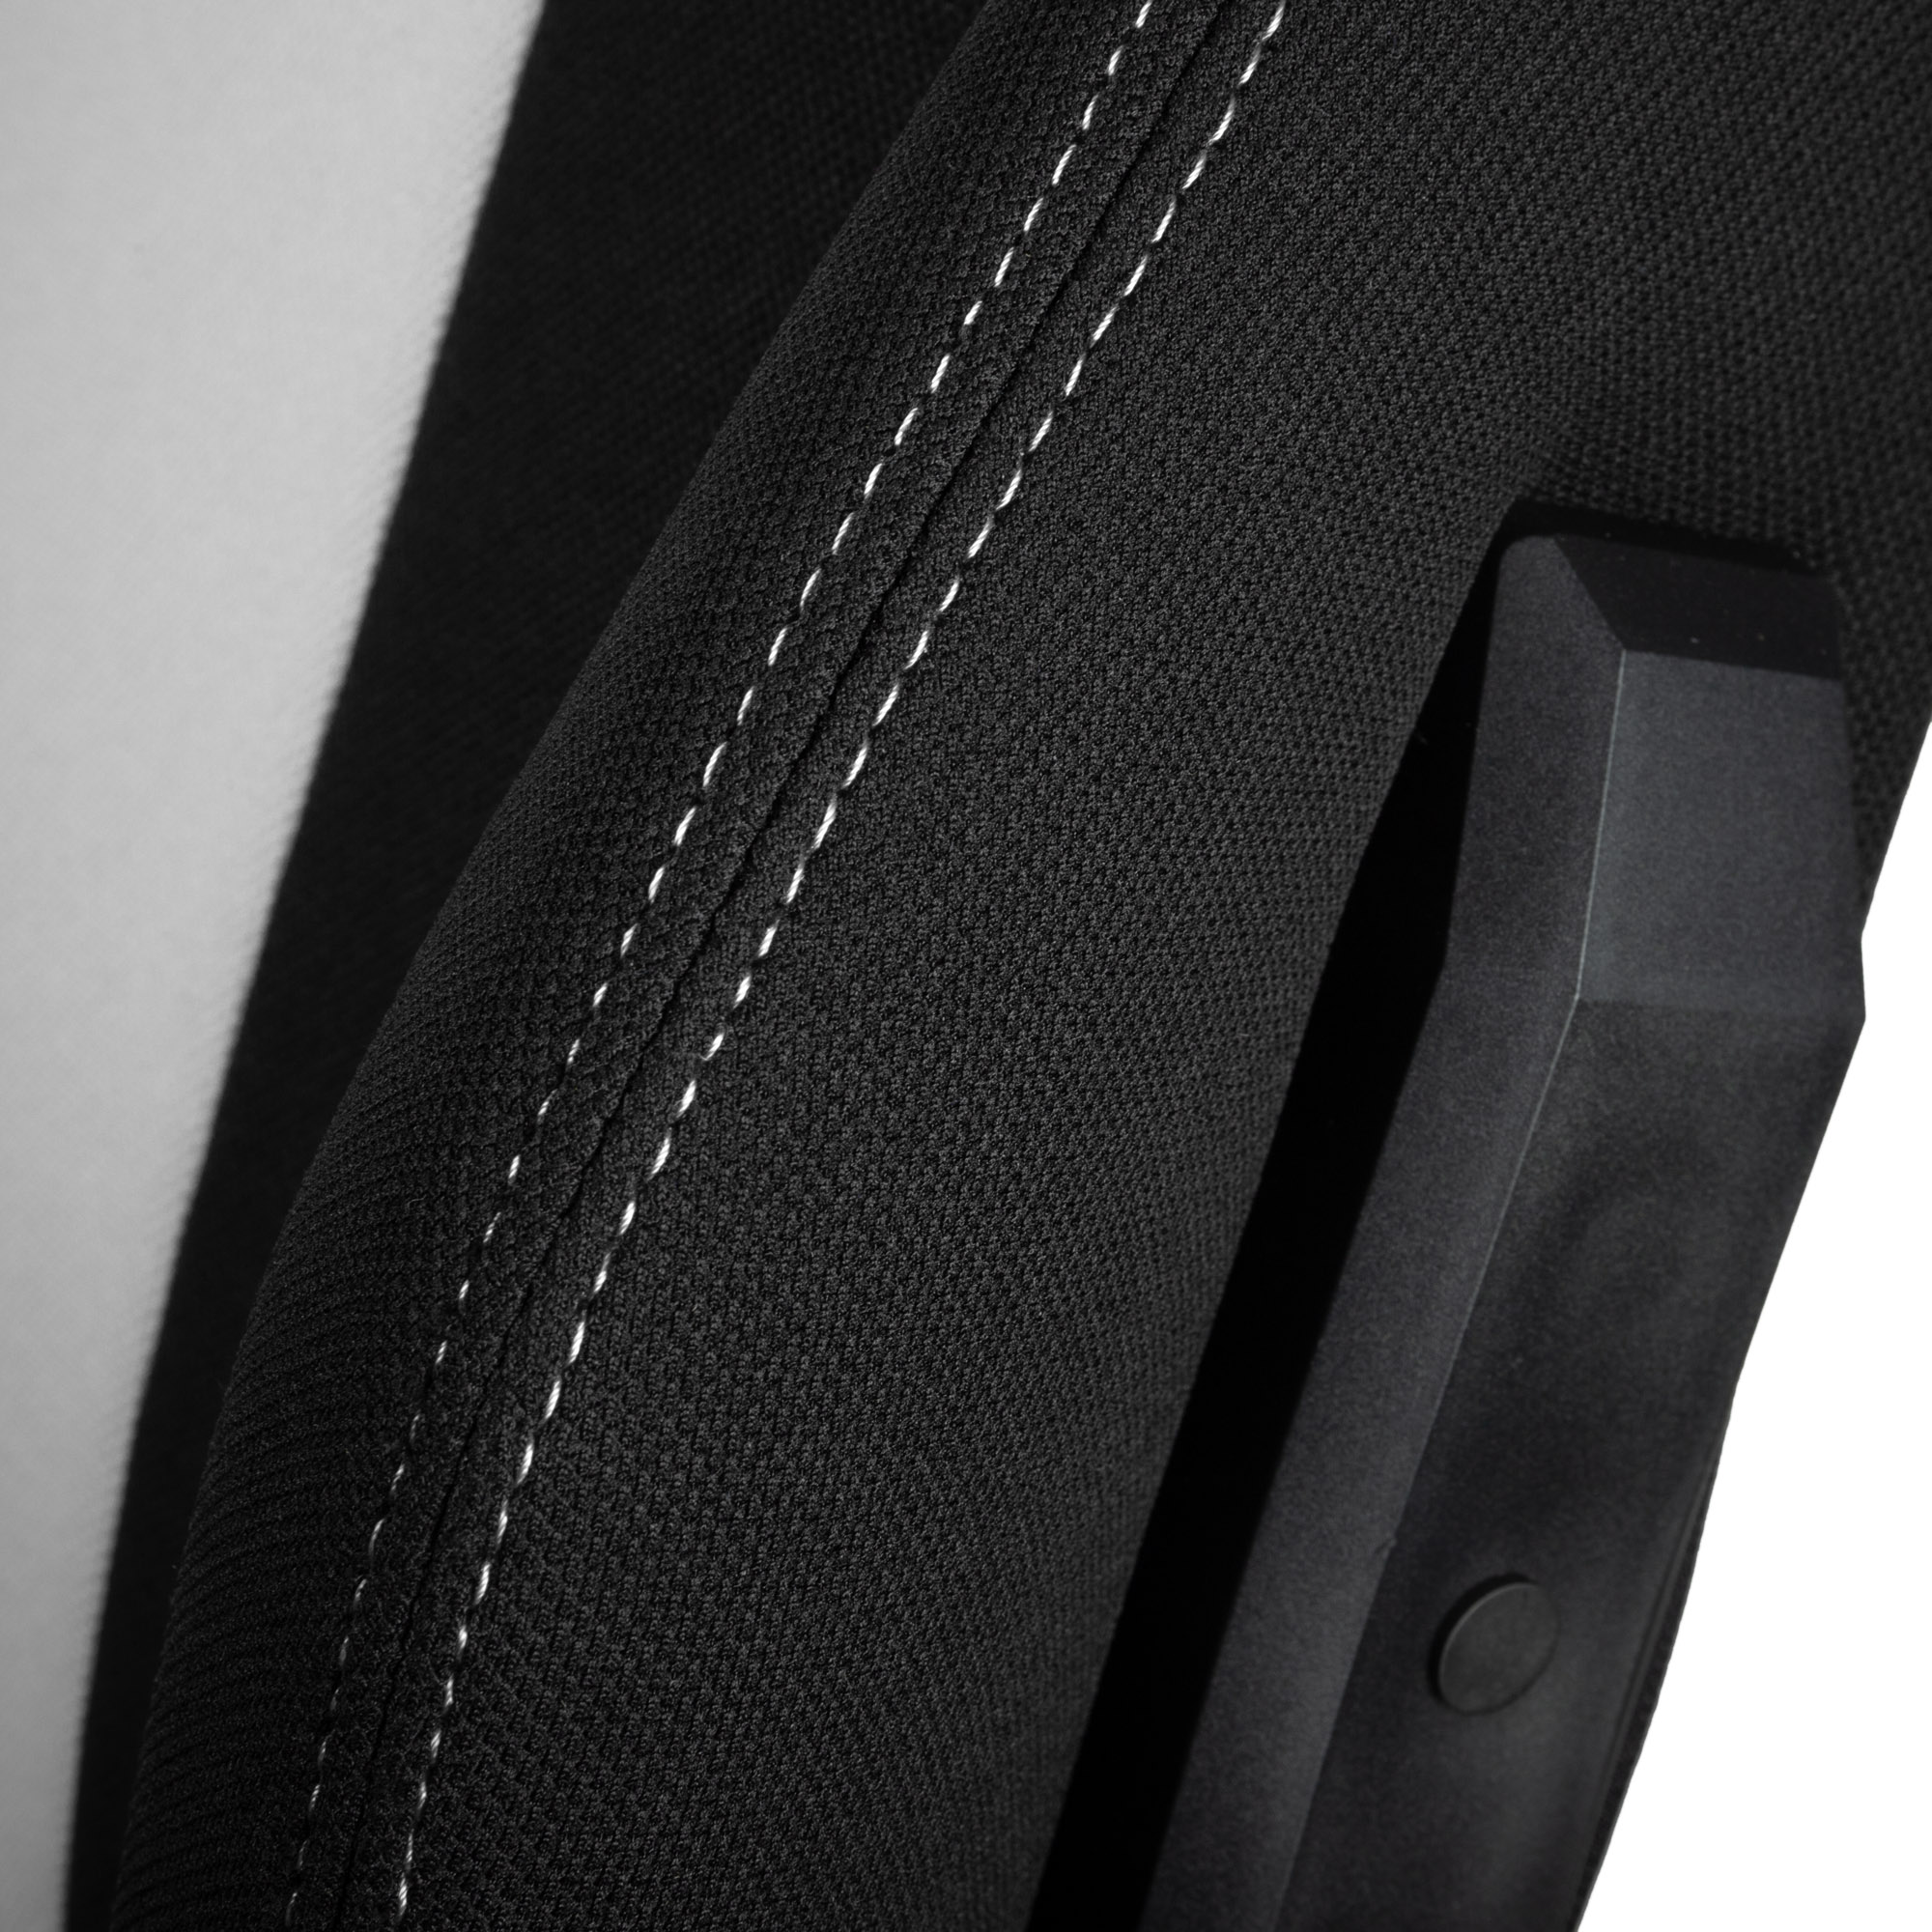 E250 Gaming Stuhl schwarz/weiß